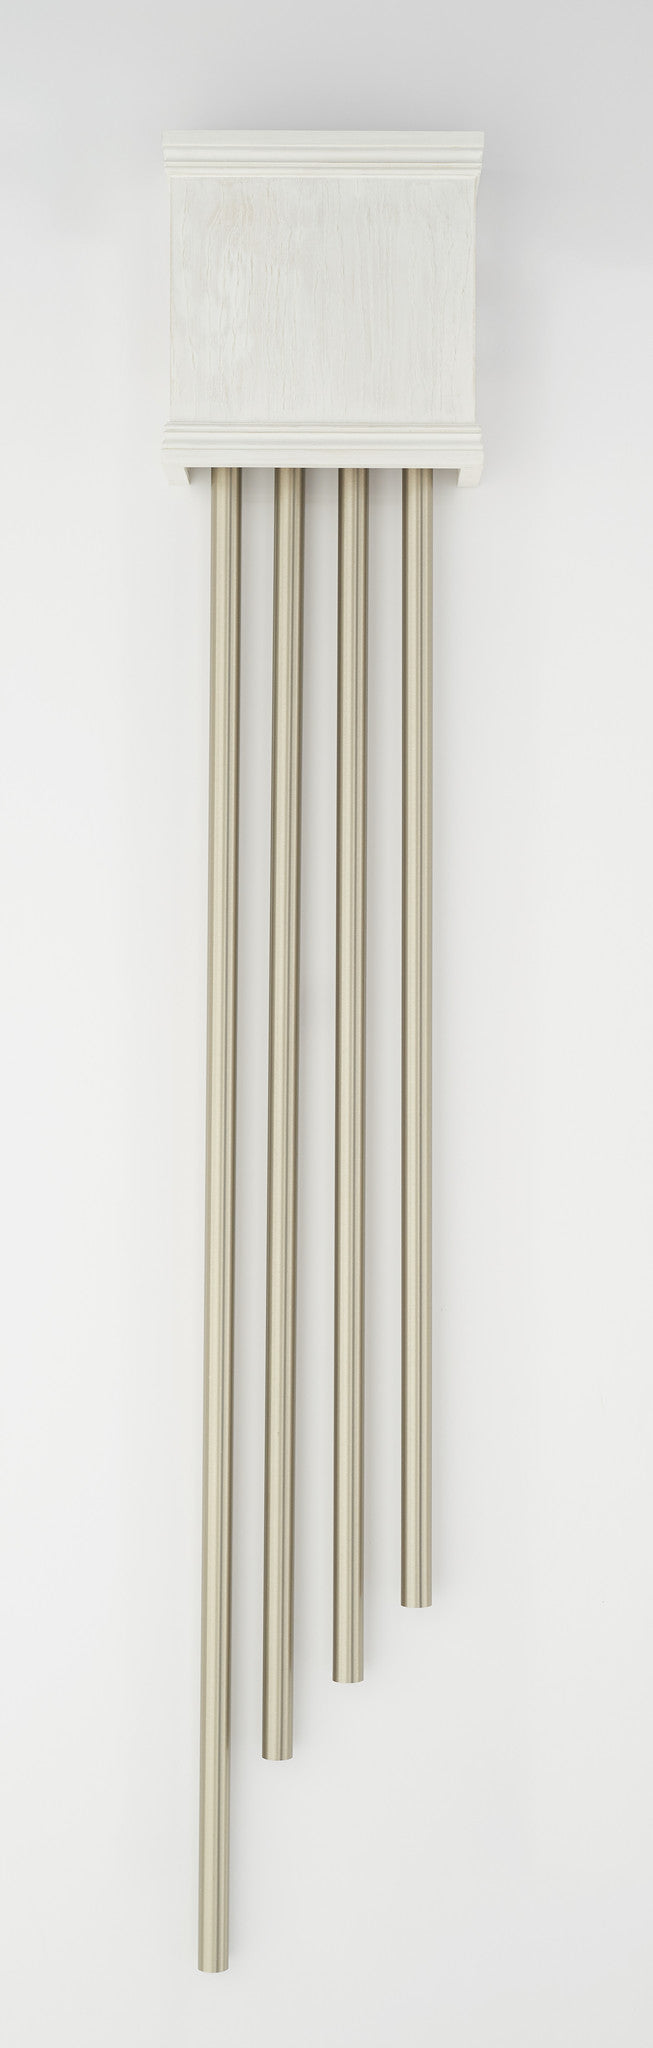 Carillon Chouette en métal 25cm MD16172